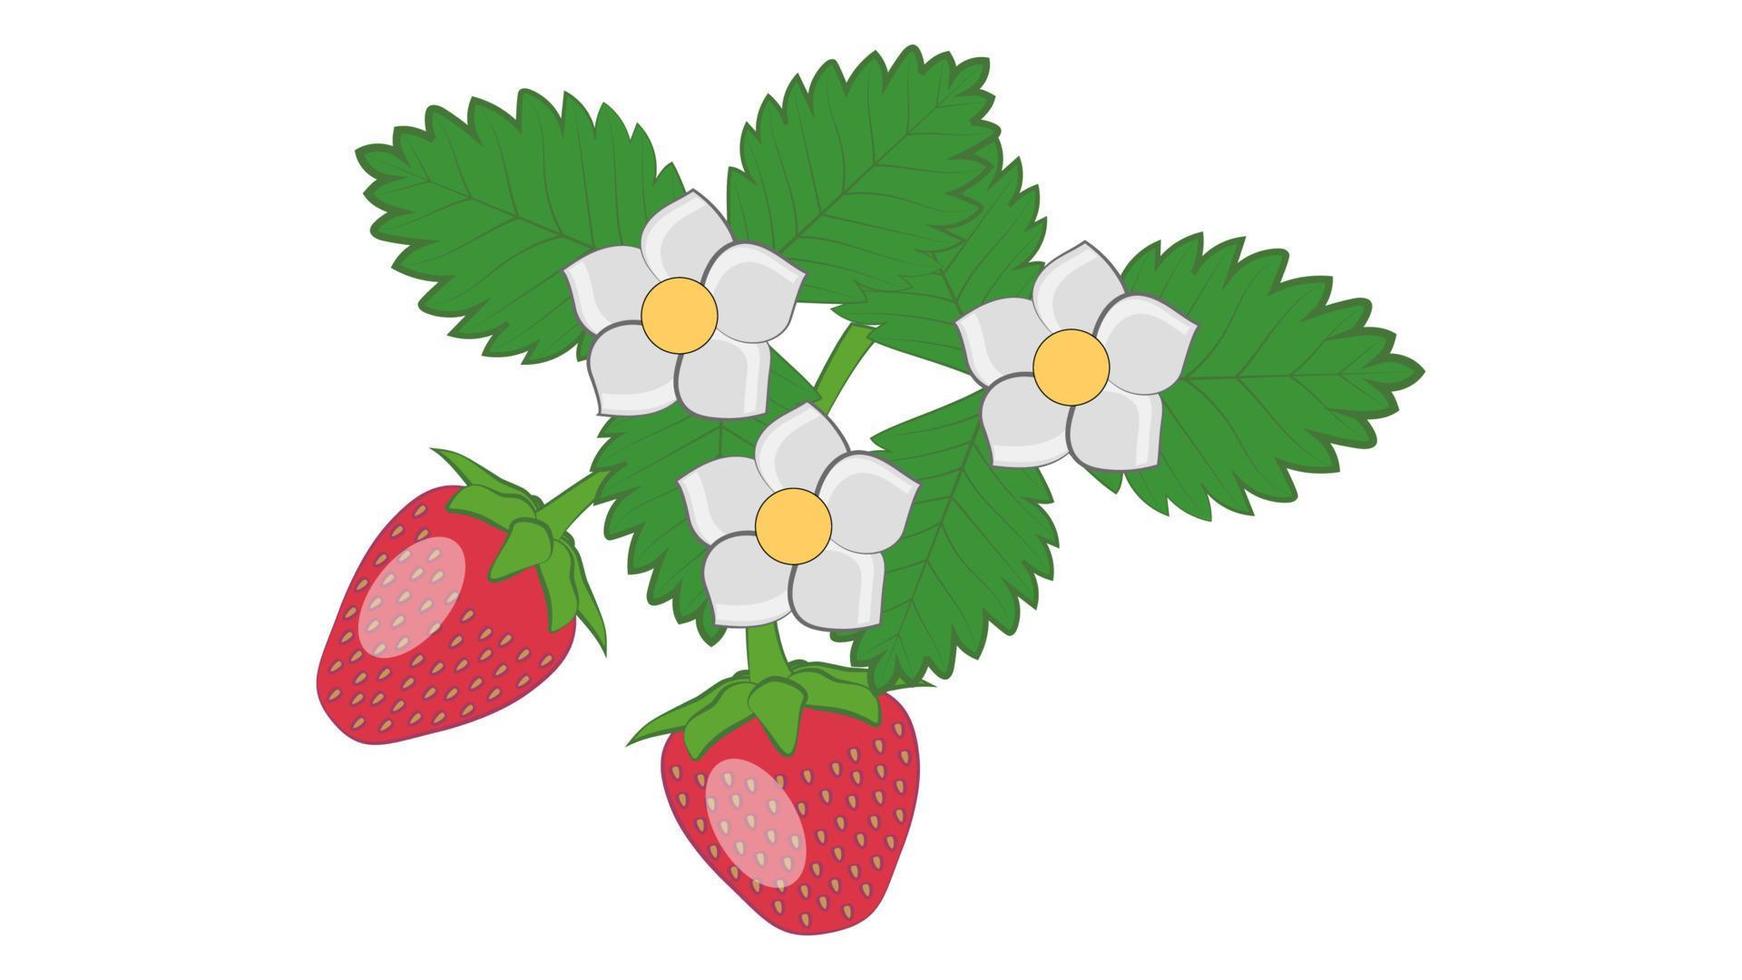 Erdbeeren mit Blättern und Blumen Ornament isoliert auf weißem Hintergrund vektor